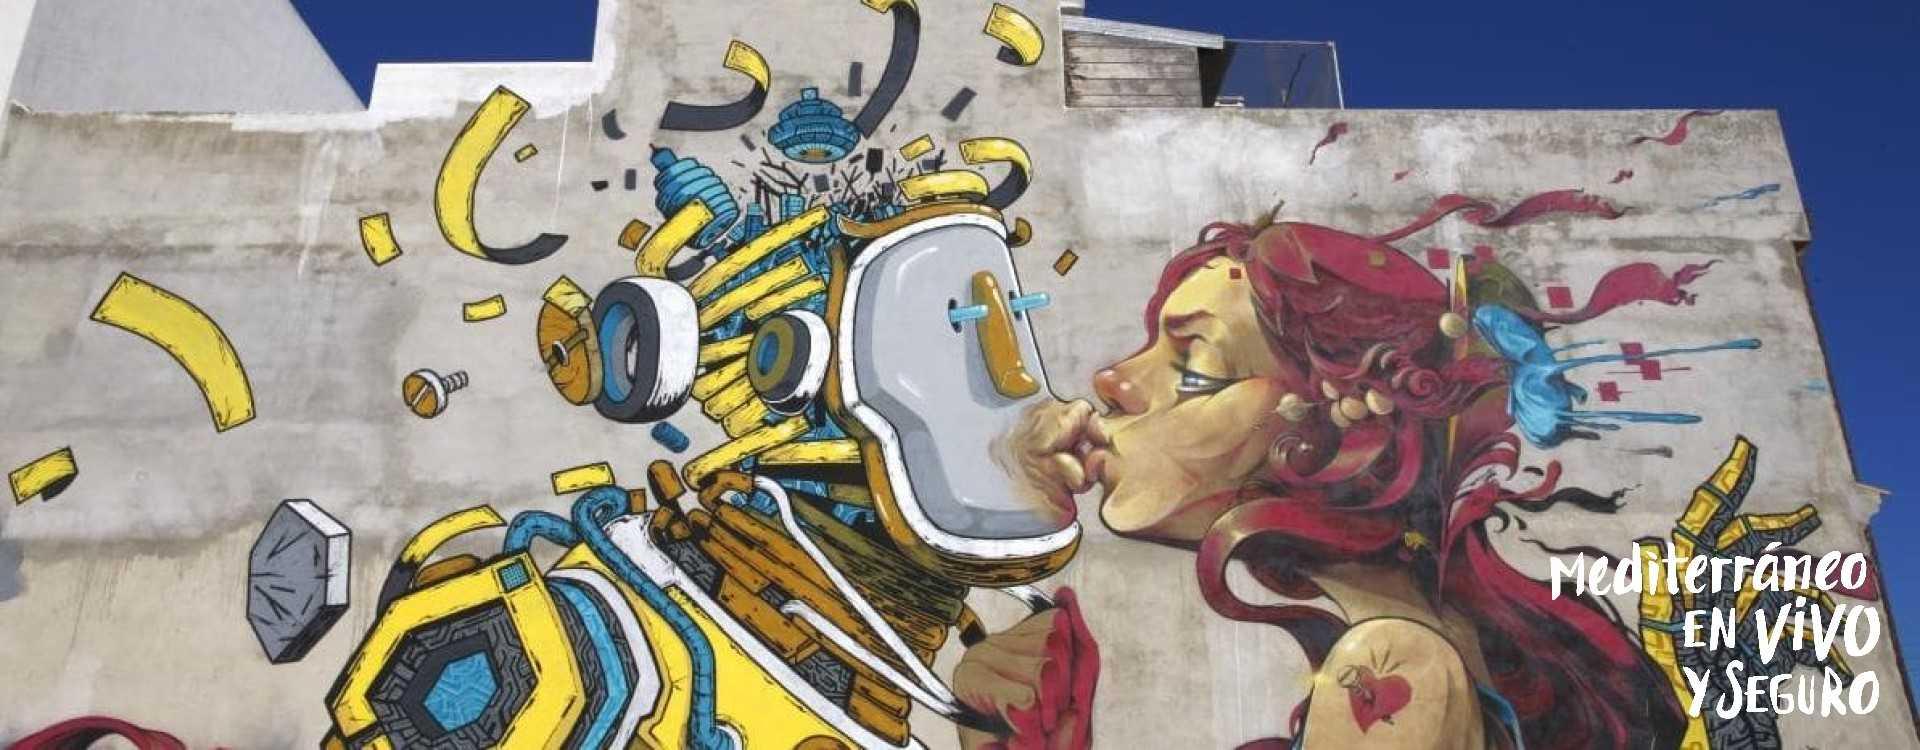 Citric, un exemple un street art o art de carrer a Torreblanca	